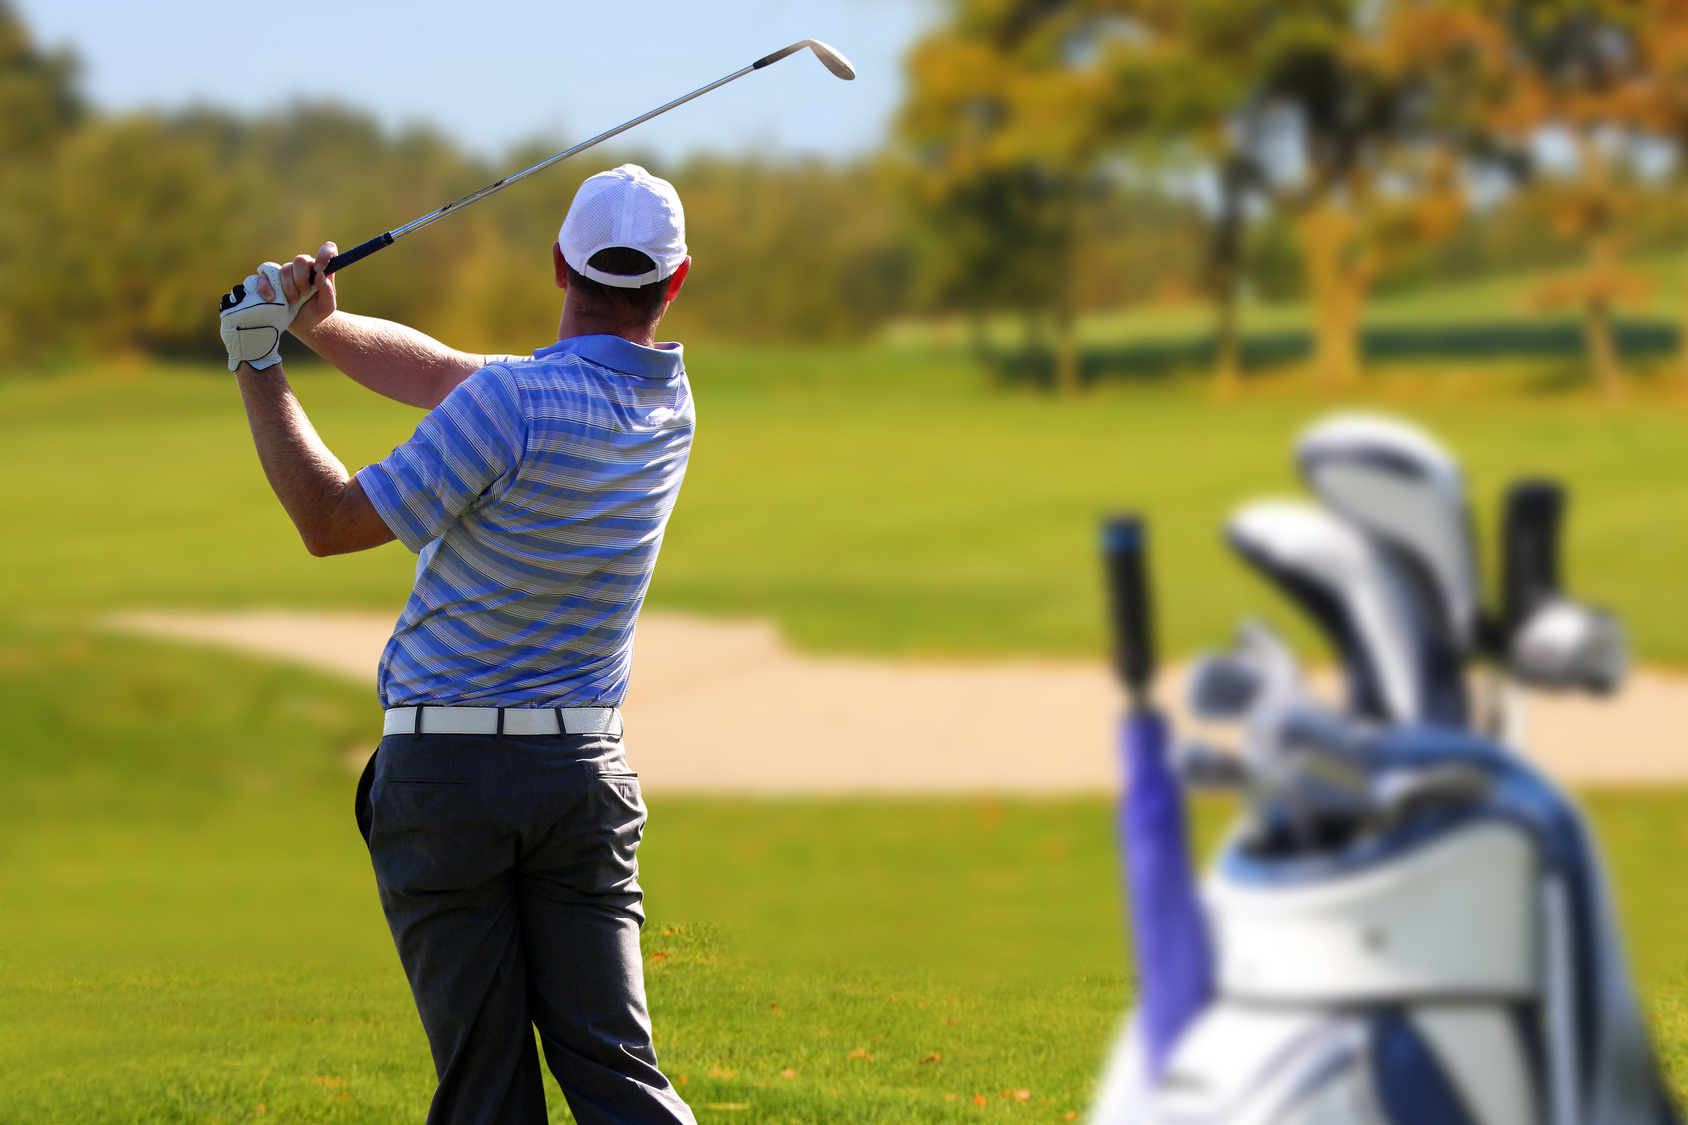 Ein kleiner Trick kann Golfern dabei helfen, auch unter Druck automatisierte Bewegungsabläufe richtig abzurufen.  Foto: samott/Fotolia